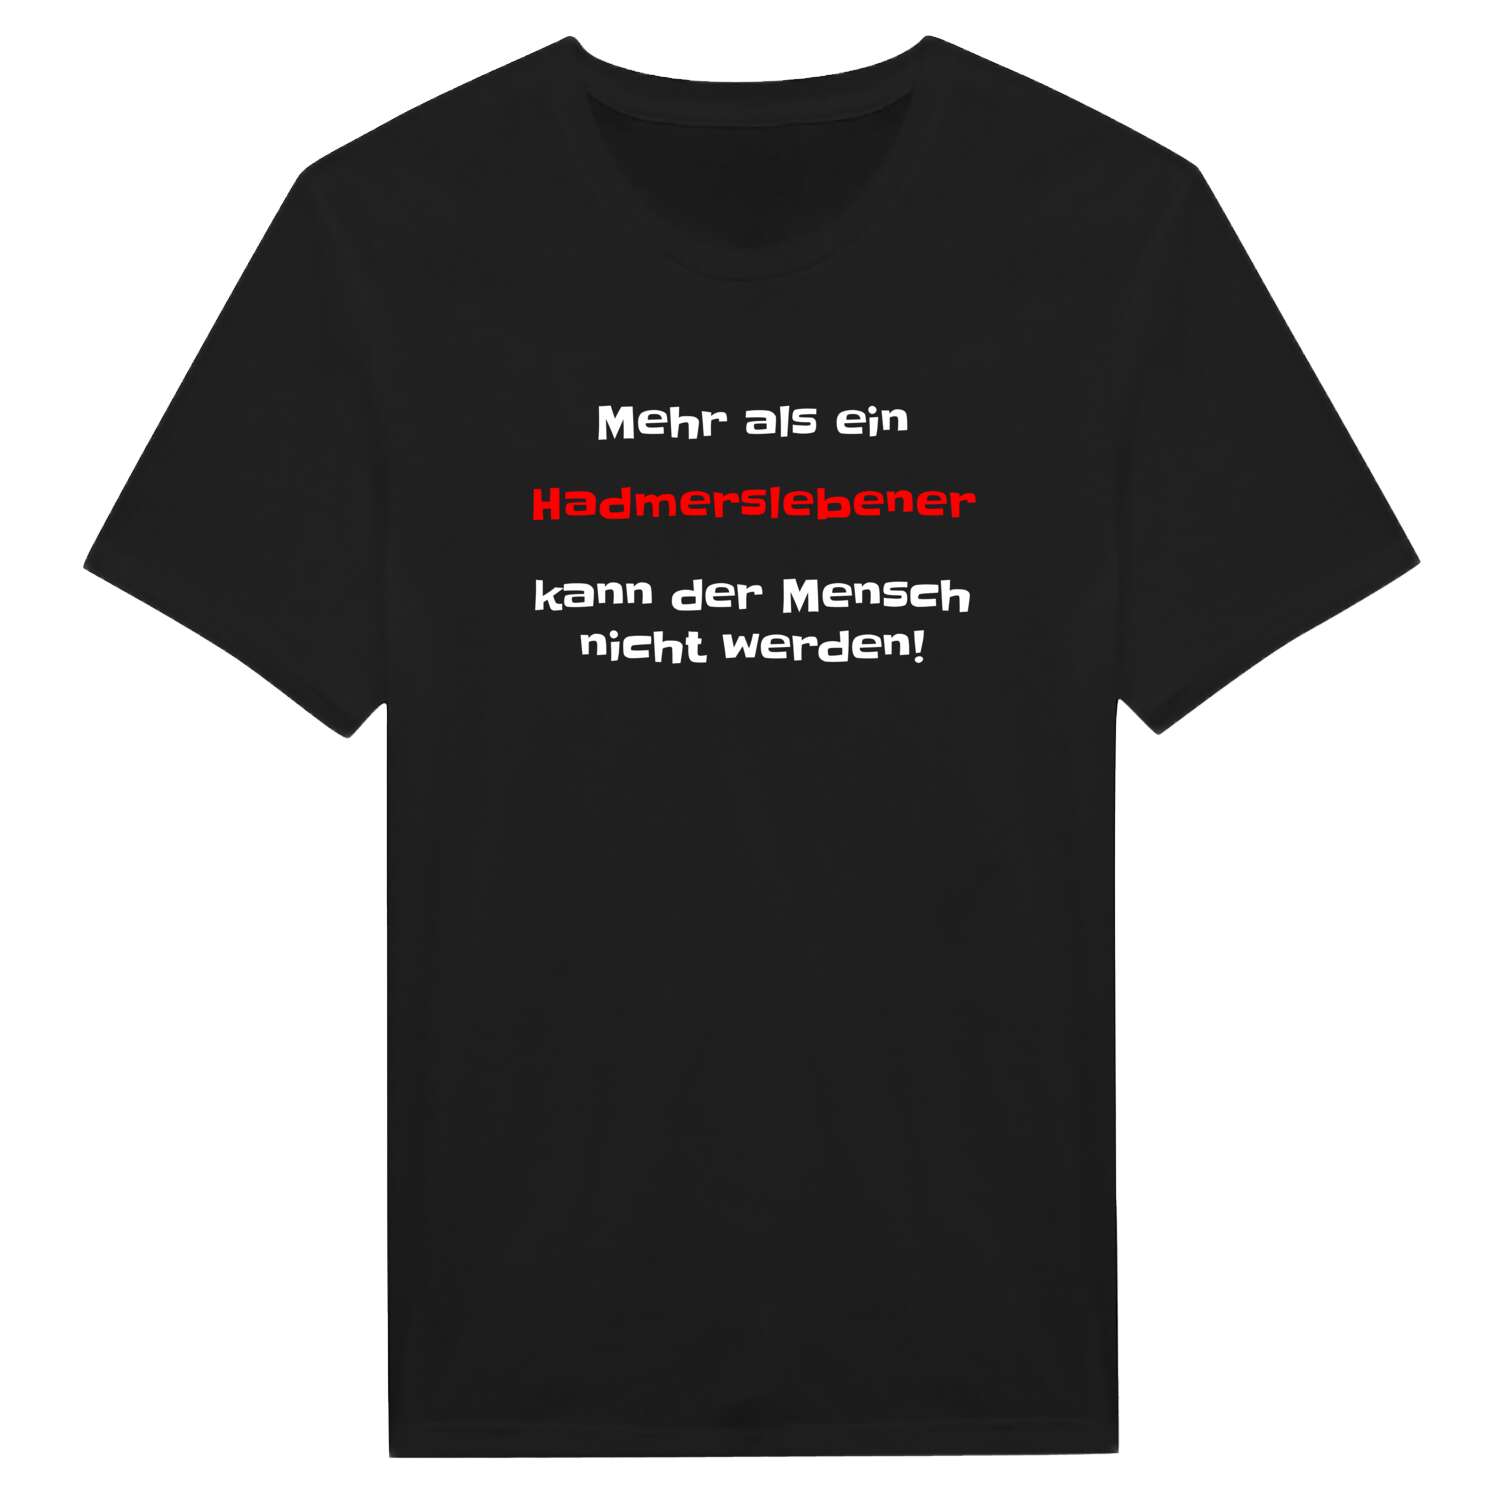 Hadmersleben T-Shirt »Mehr als ein«